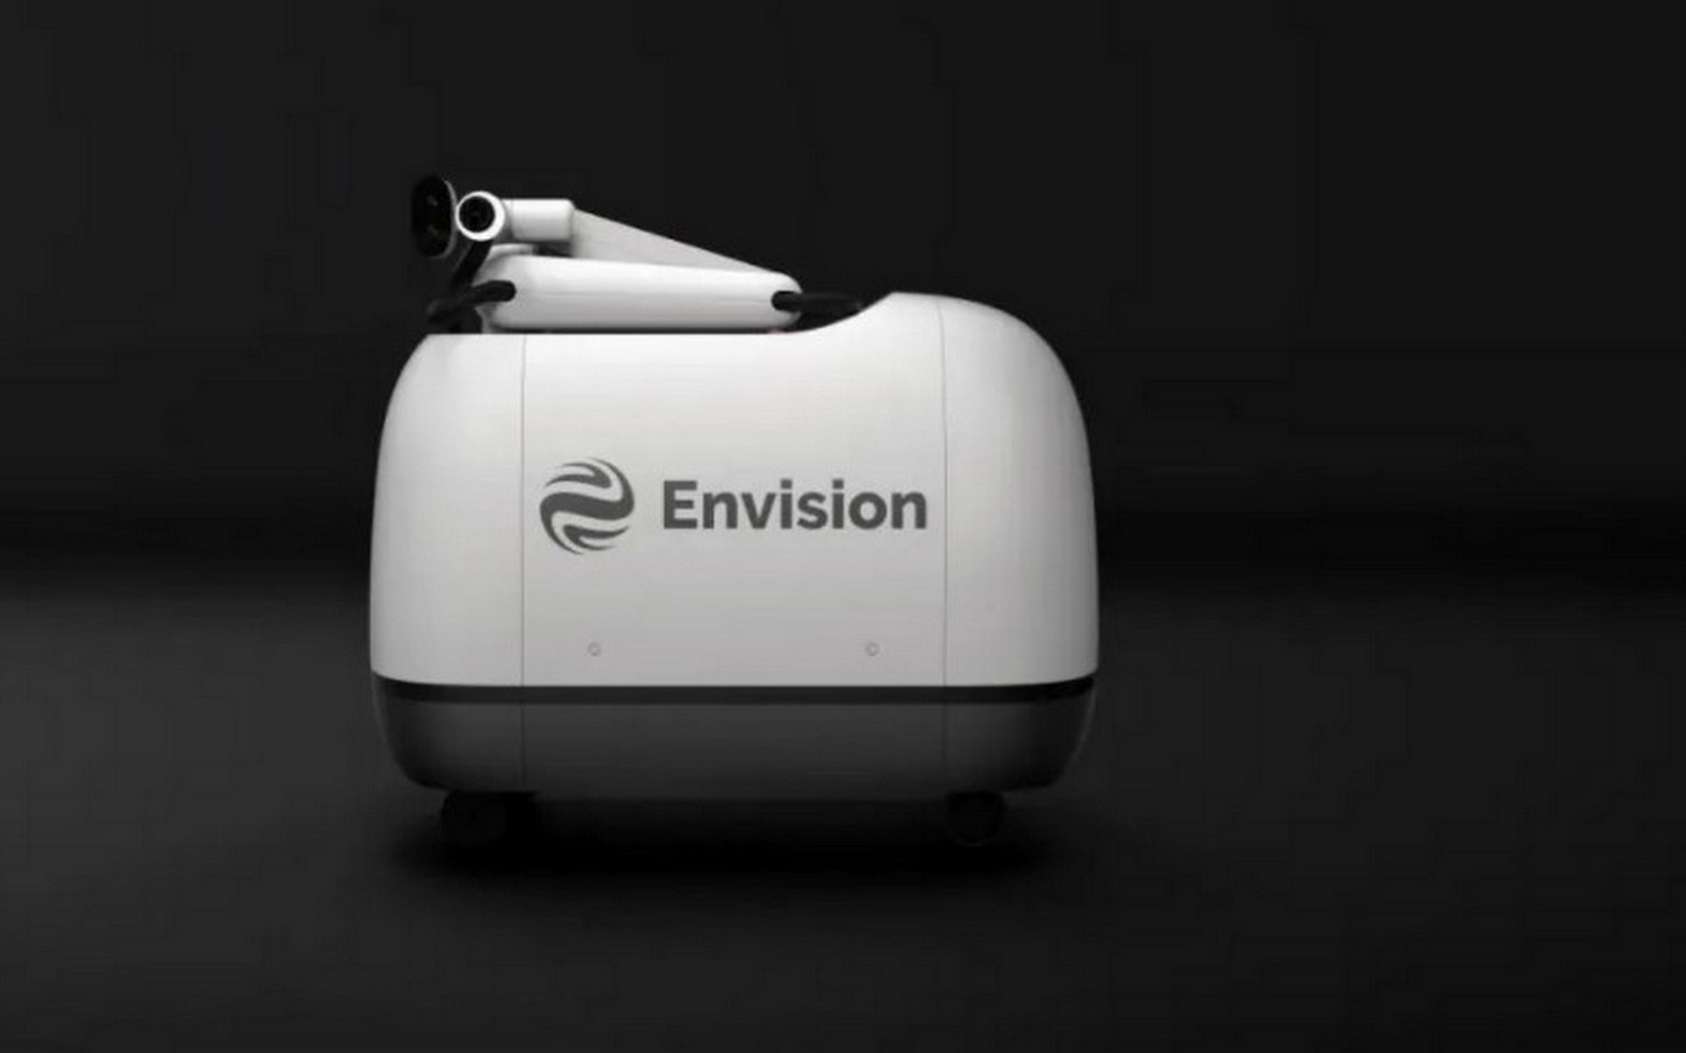 Le robot de recharge Mochi d'Envision va entrer en service à Shanghai cet été. © Envision Group